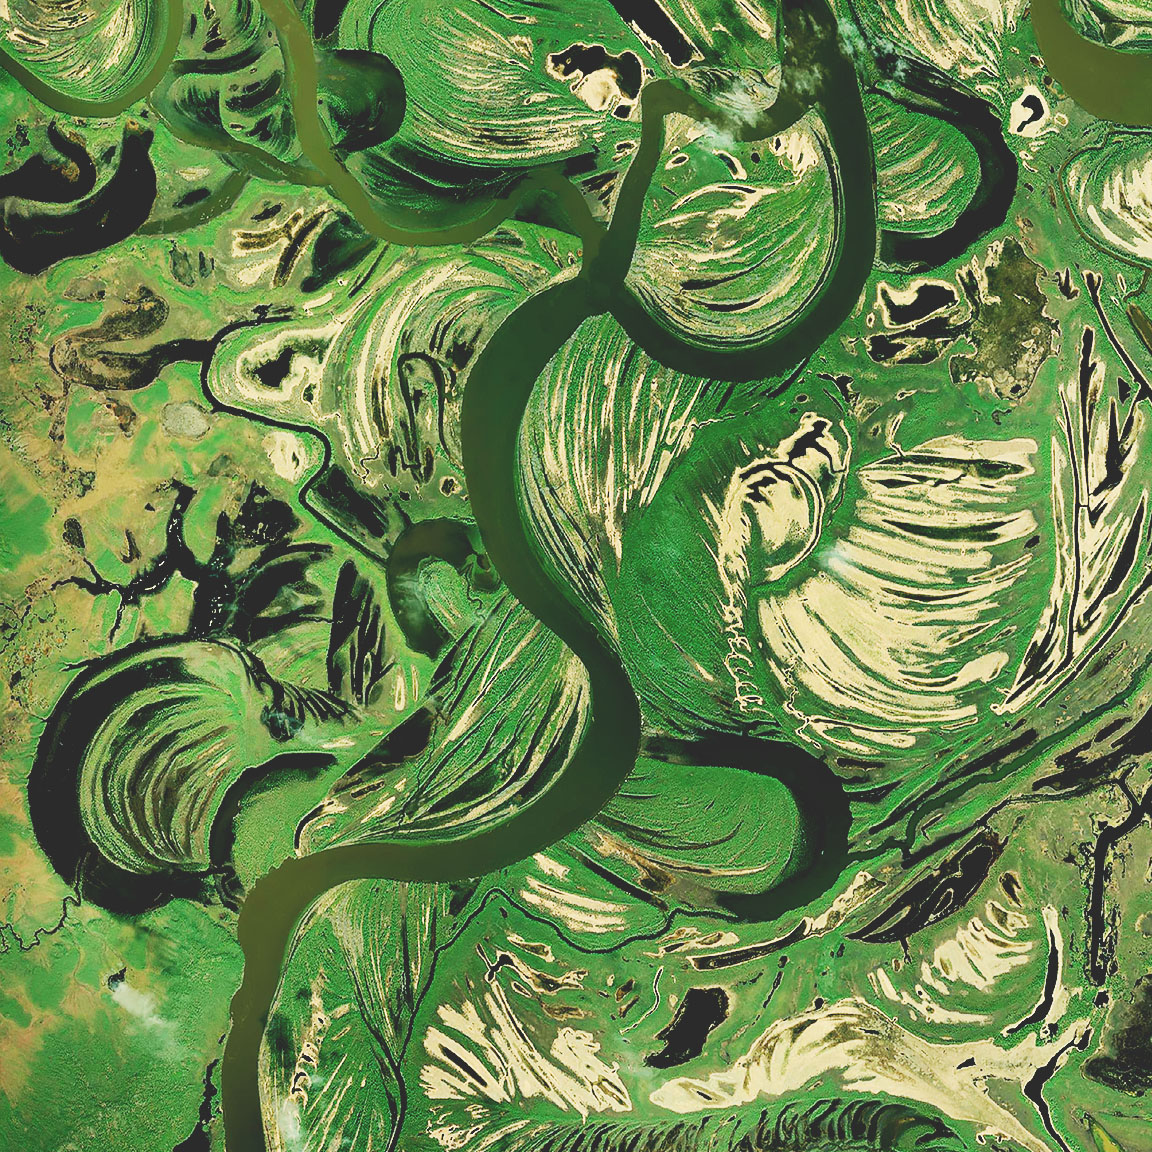 Satellitenbilder von Feuchtgebieten zeigen einen dunkelgrünen Fluss, der sich durch braune und hellgrüne Sümpfe schlängelt